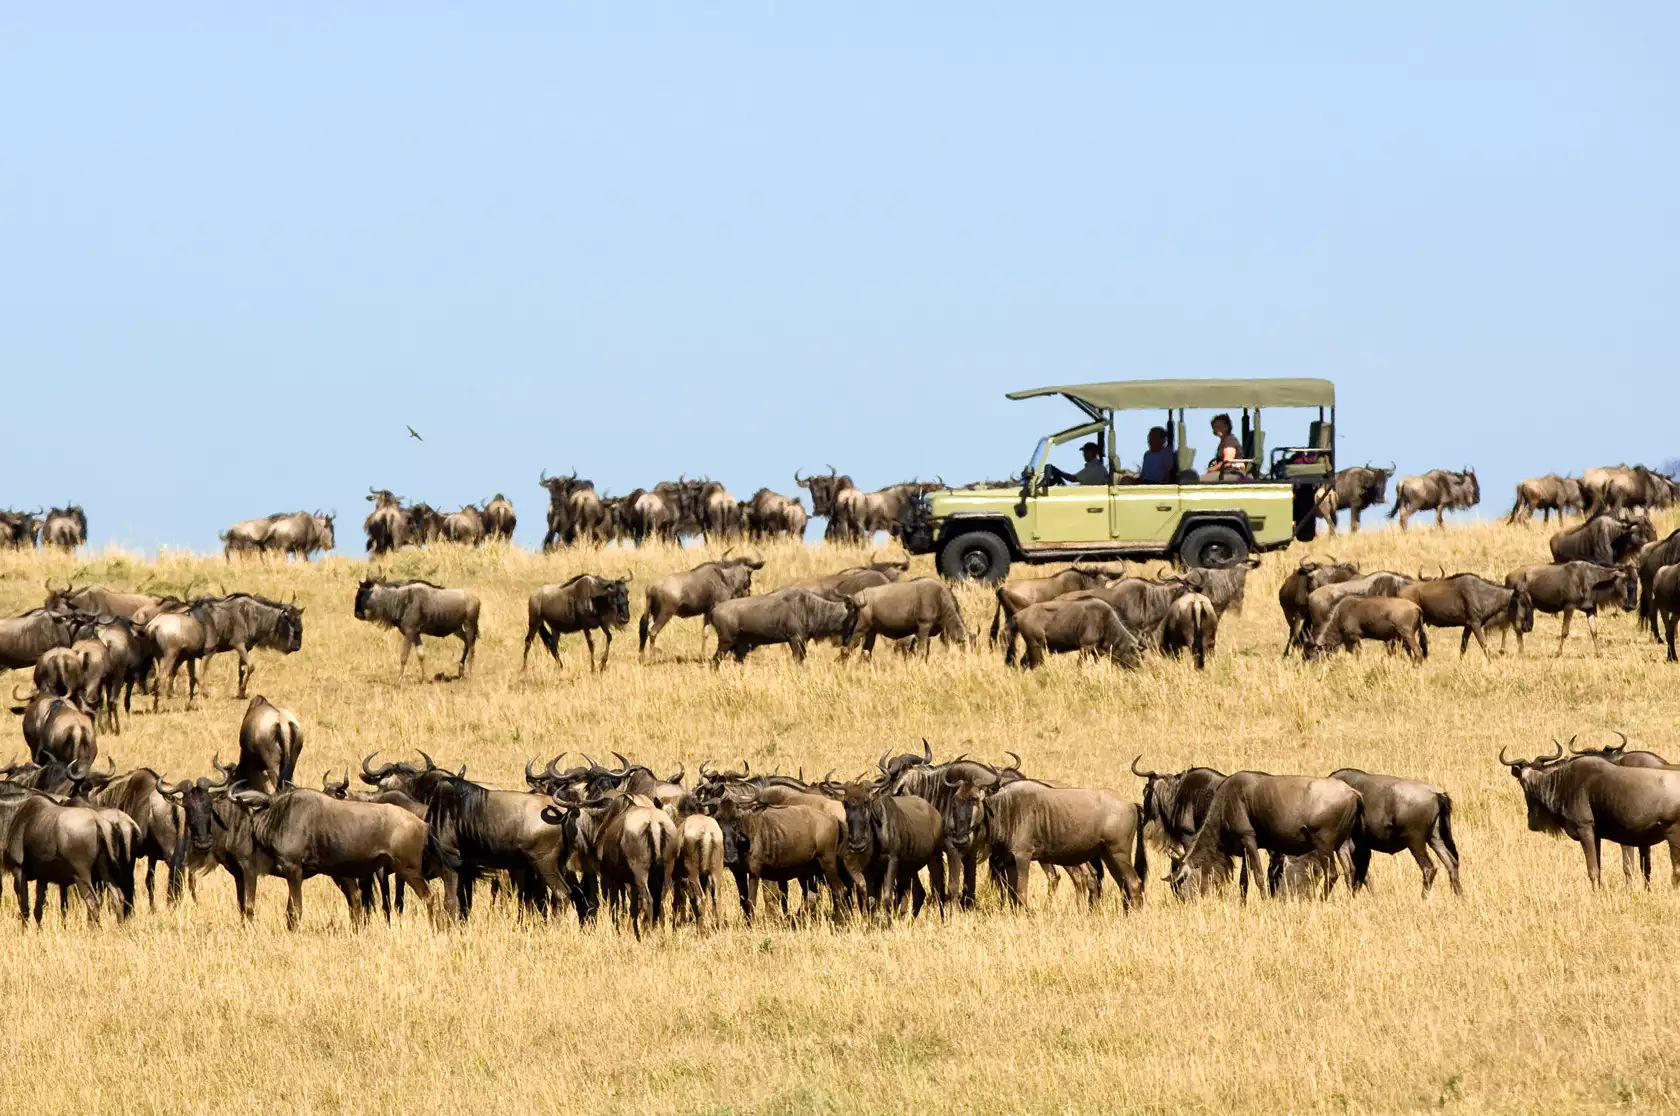 4-day Introducing Tanzania safari